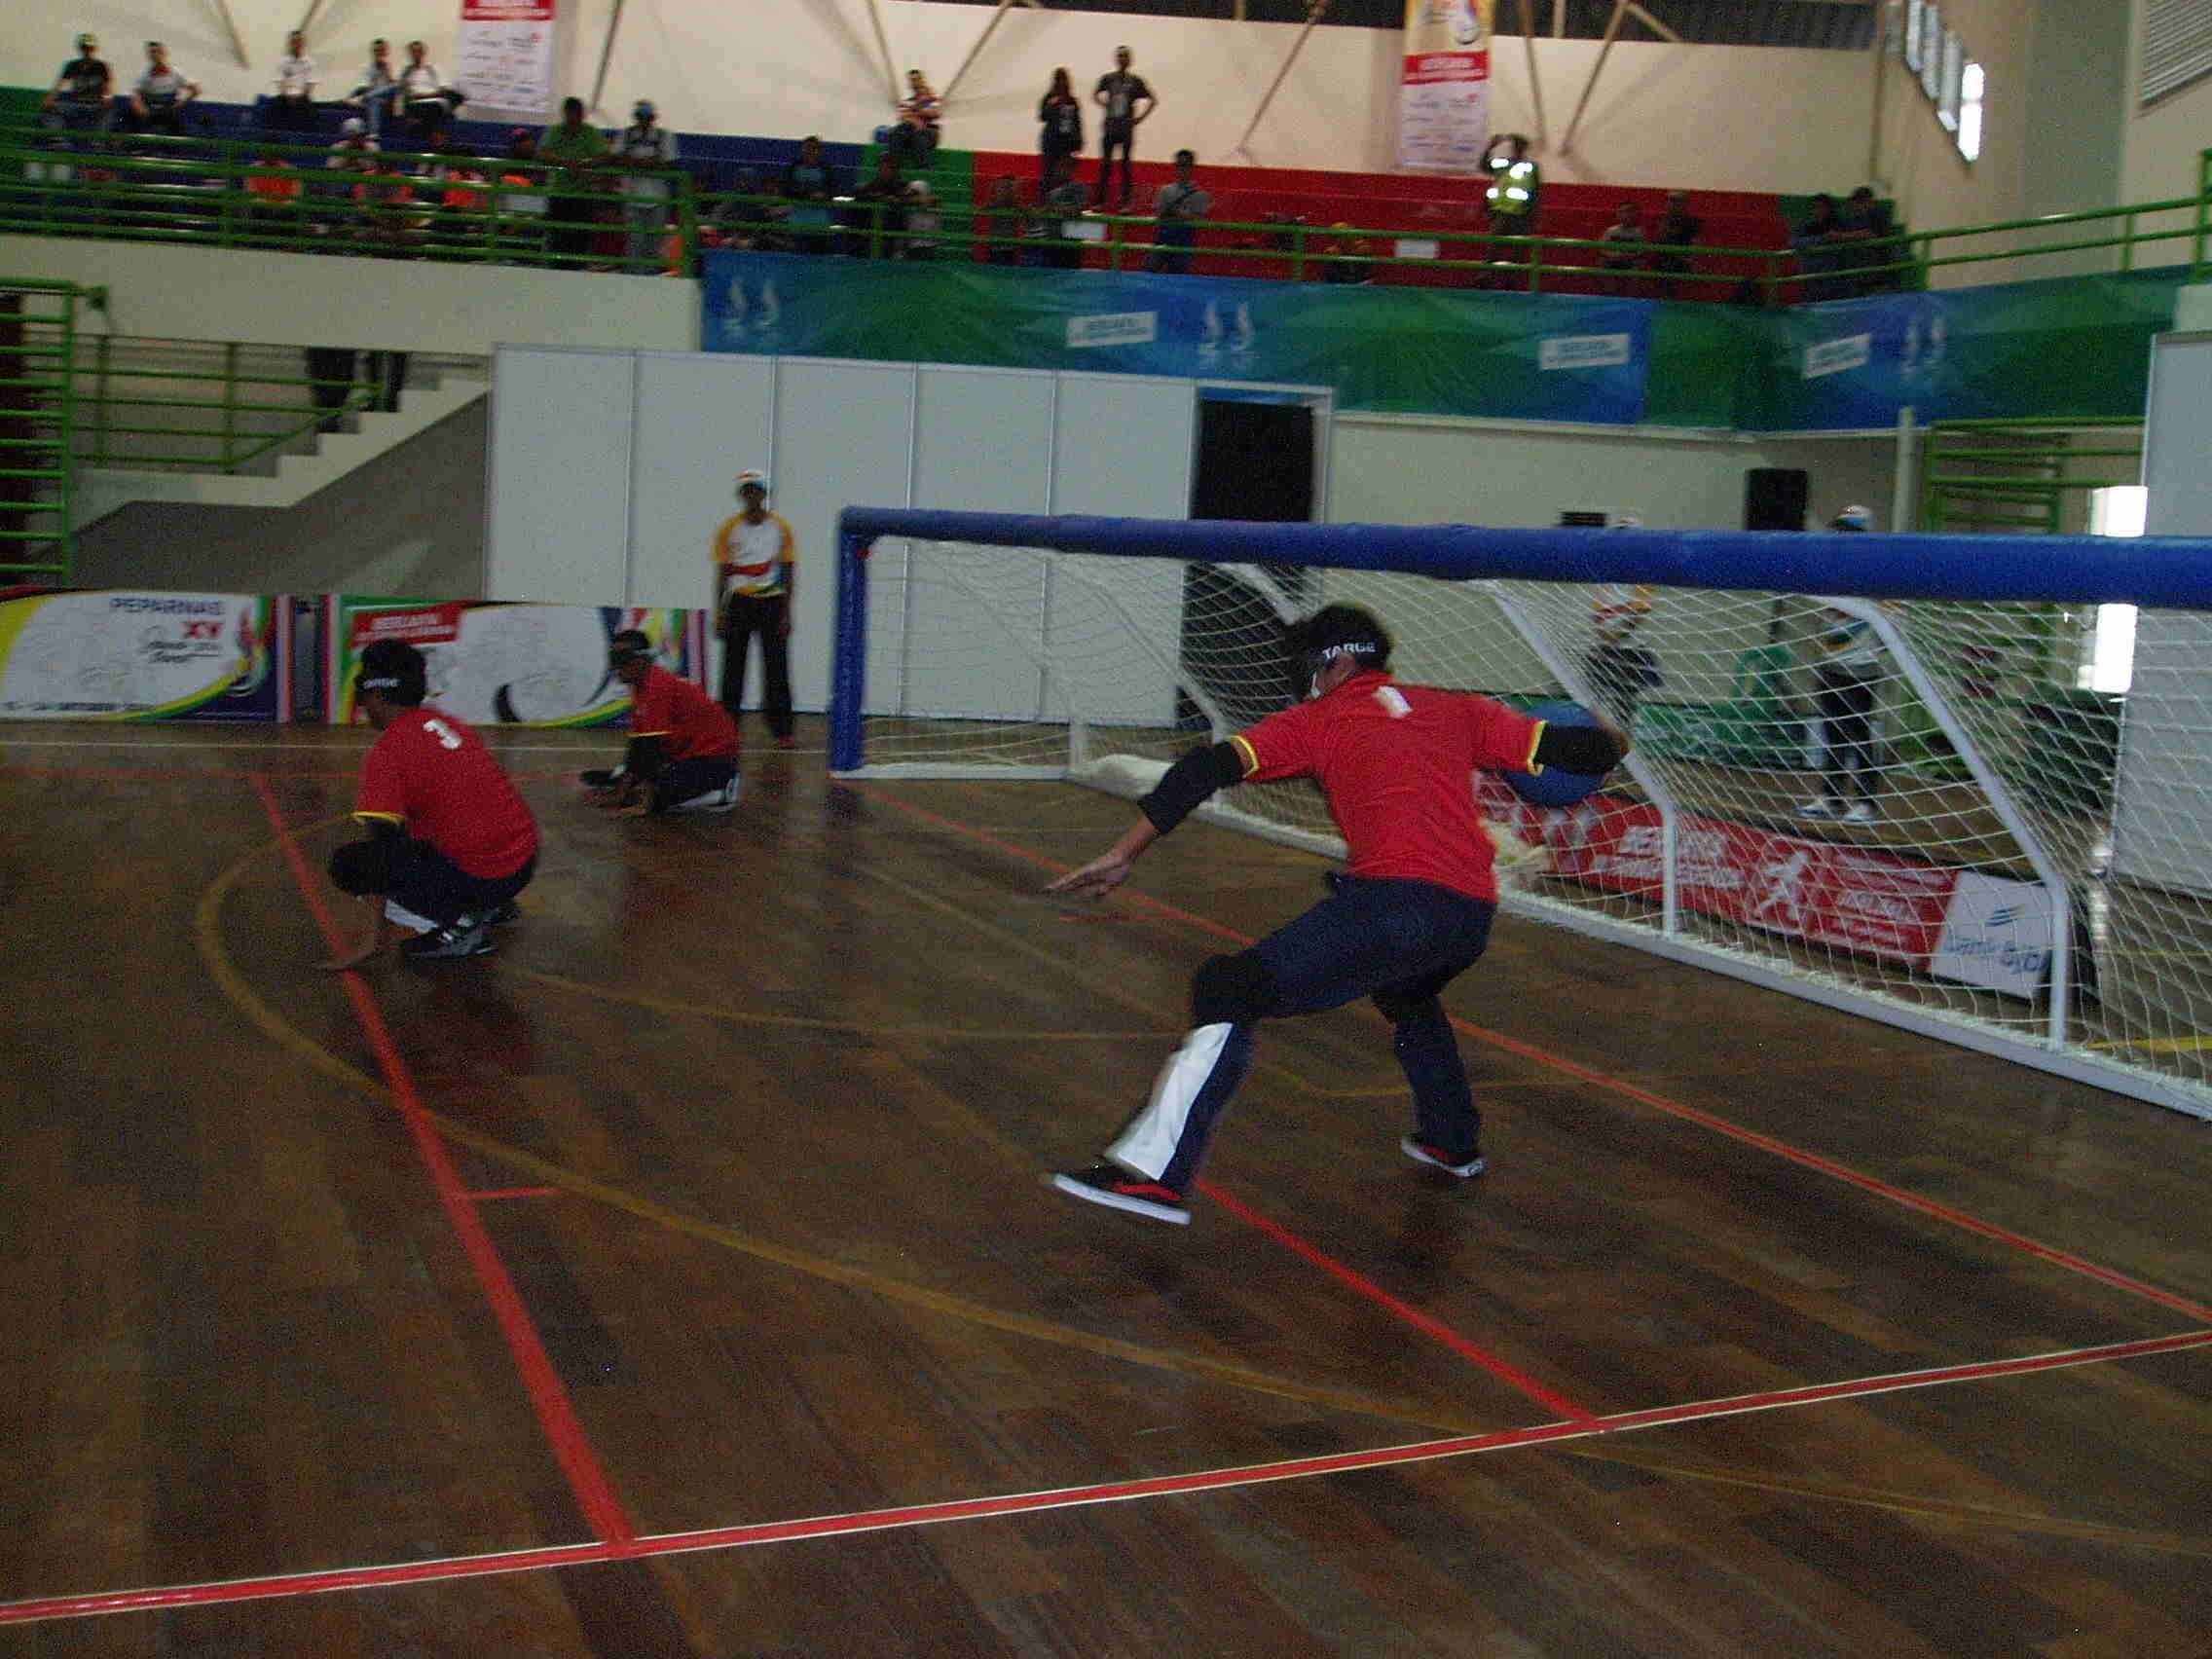 Atlet goal ball Gorontalo melemparkan bola dalam pertandingan melawan tim Kalimantan Timur di Sport Center Arcamanik Kota Bandung, Minggu (16/10). Foto oleh Yuli Saputra/Rappler 